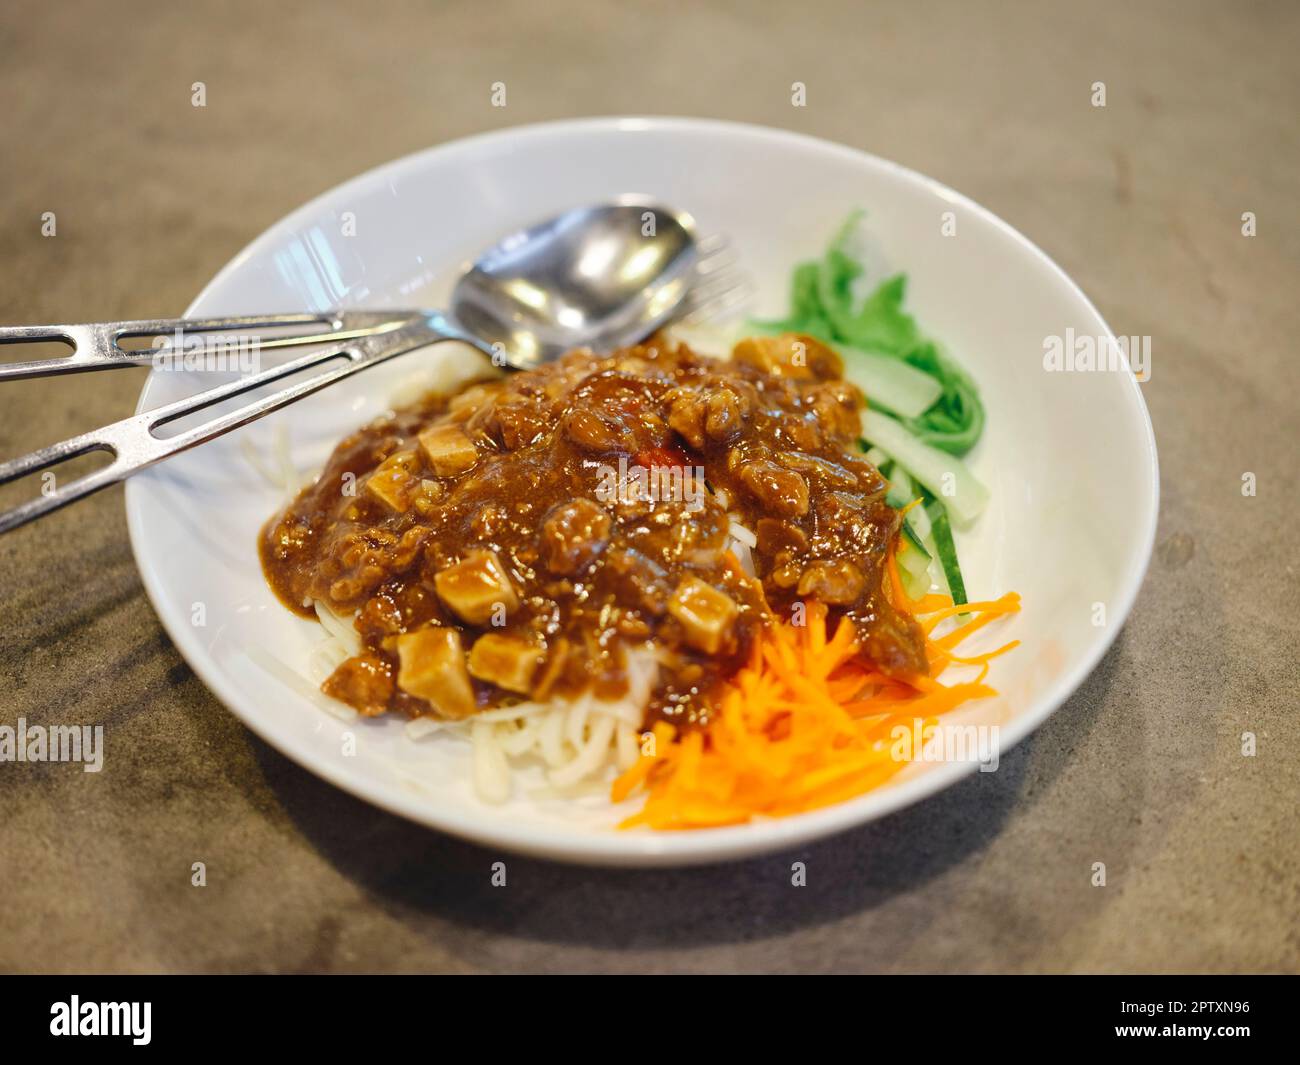 Un aliment coréen, Jajangmyeon ou nouilles avec sauce aux haricots noirs fermentés Banque D'Images